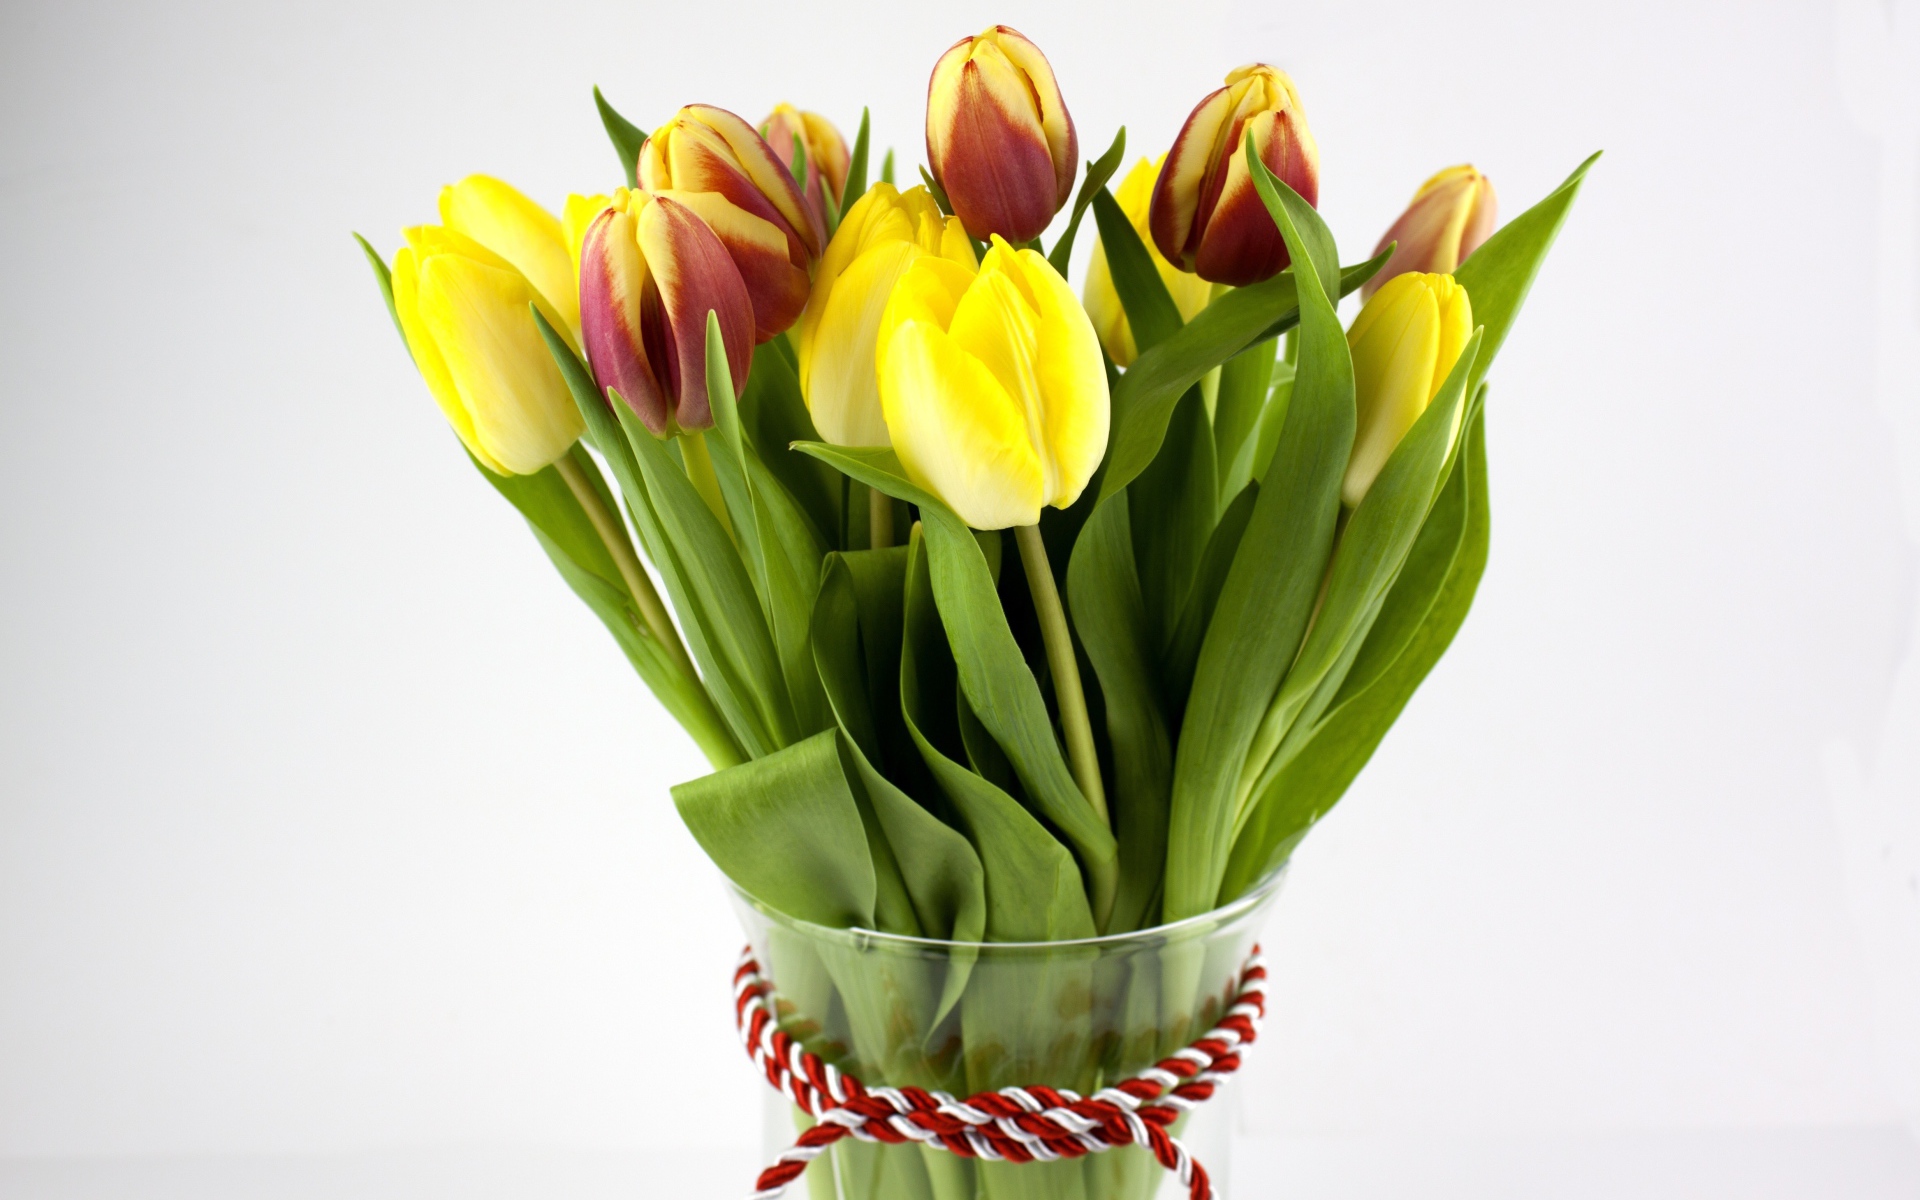 Букет желтых и красно-желтых тюльпанов на сером фоне